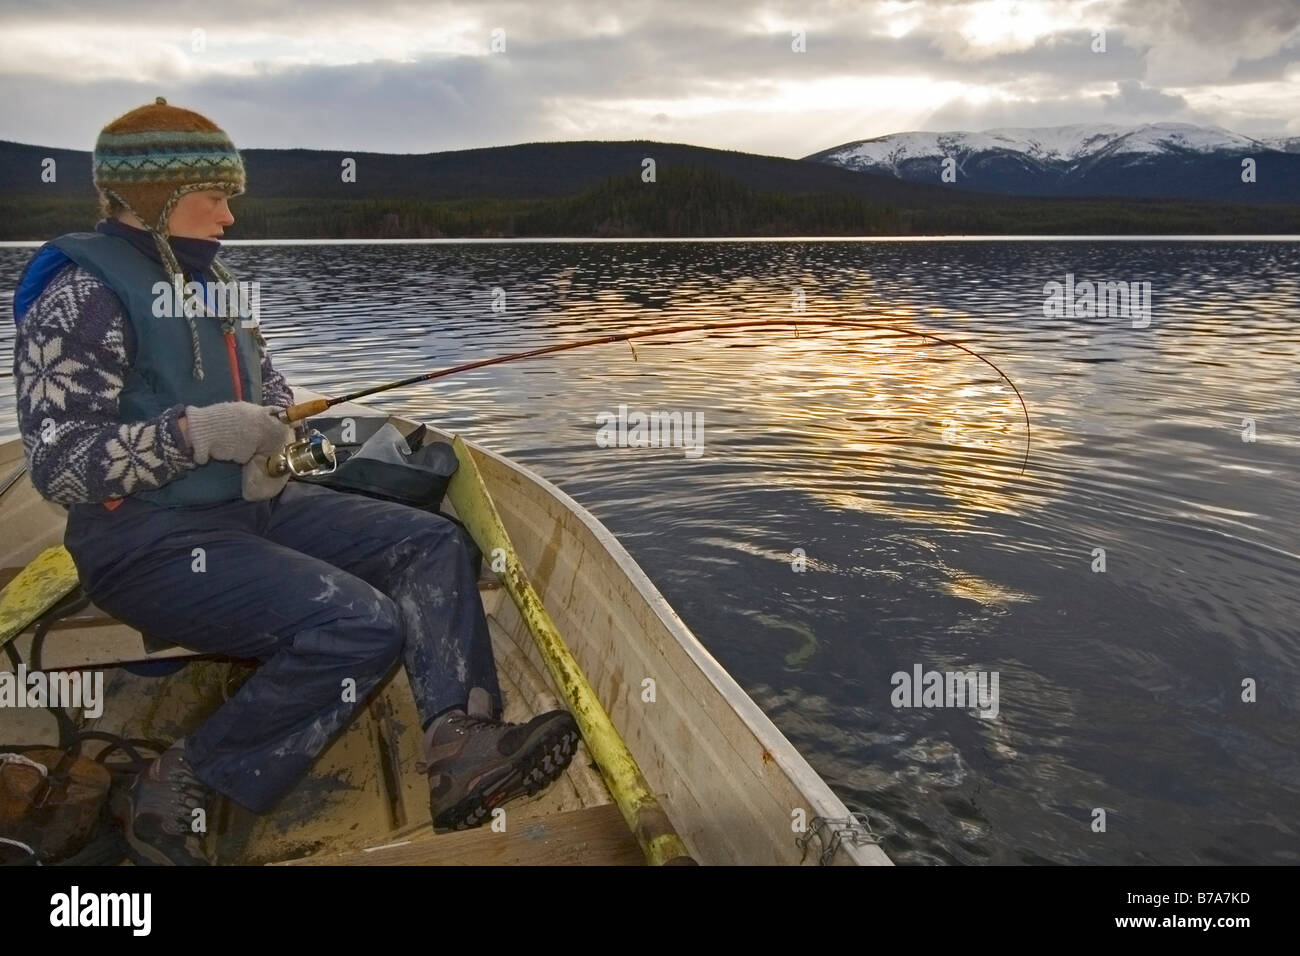 Frau in einem Boot kämpfen mit einen dicken Fisch an der Linie, Sonne gesetzt, Big Salmon Lake, Yukon Territorium, Kanada, Nordamerika Stockfoto